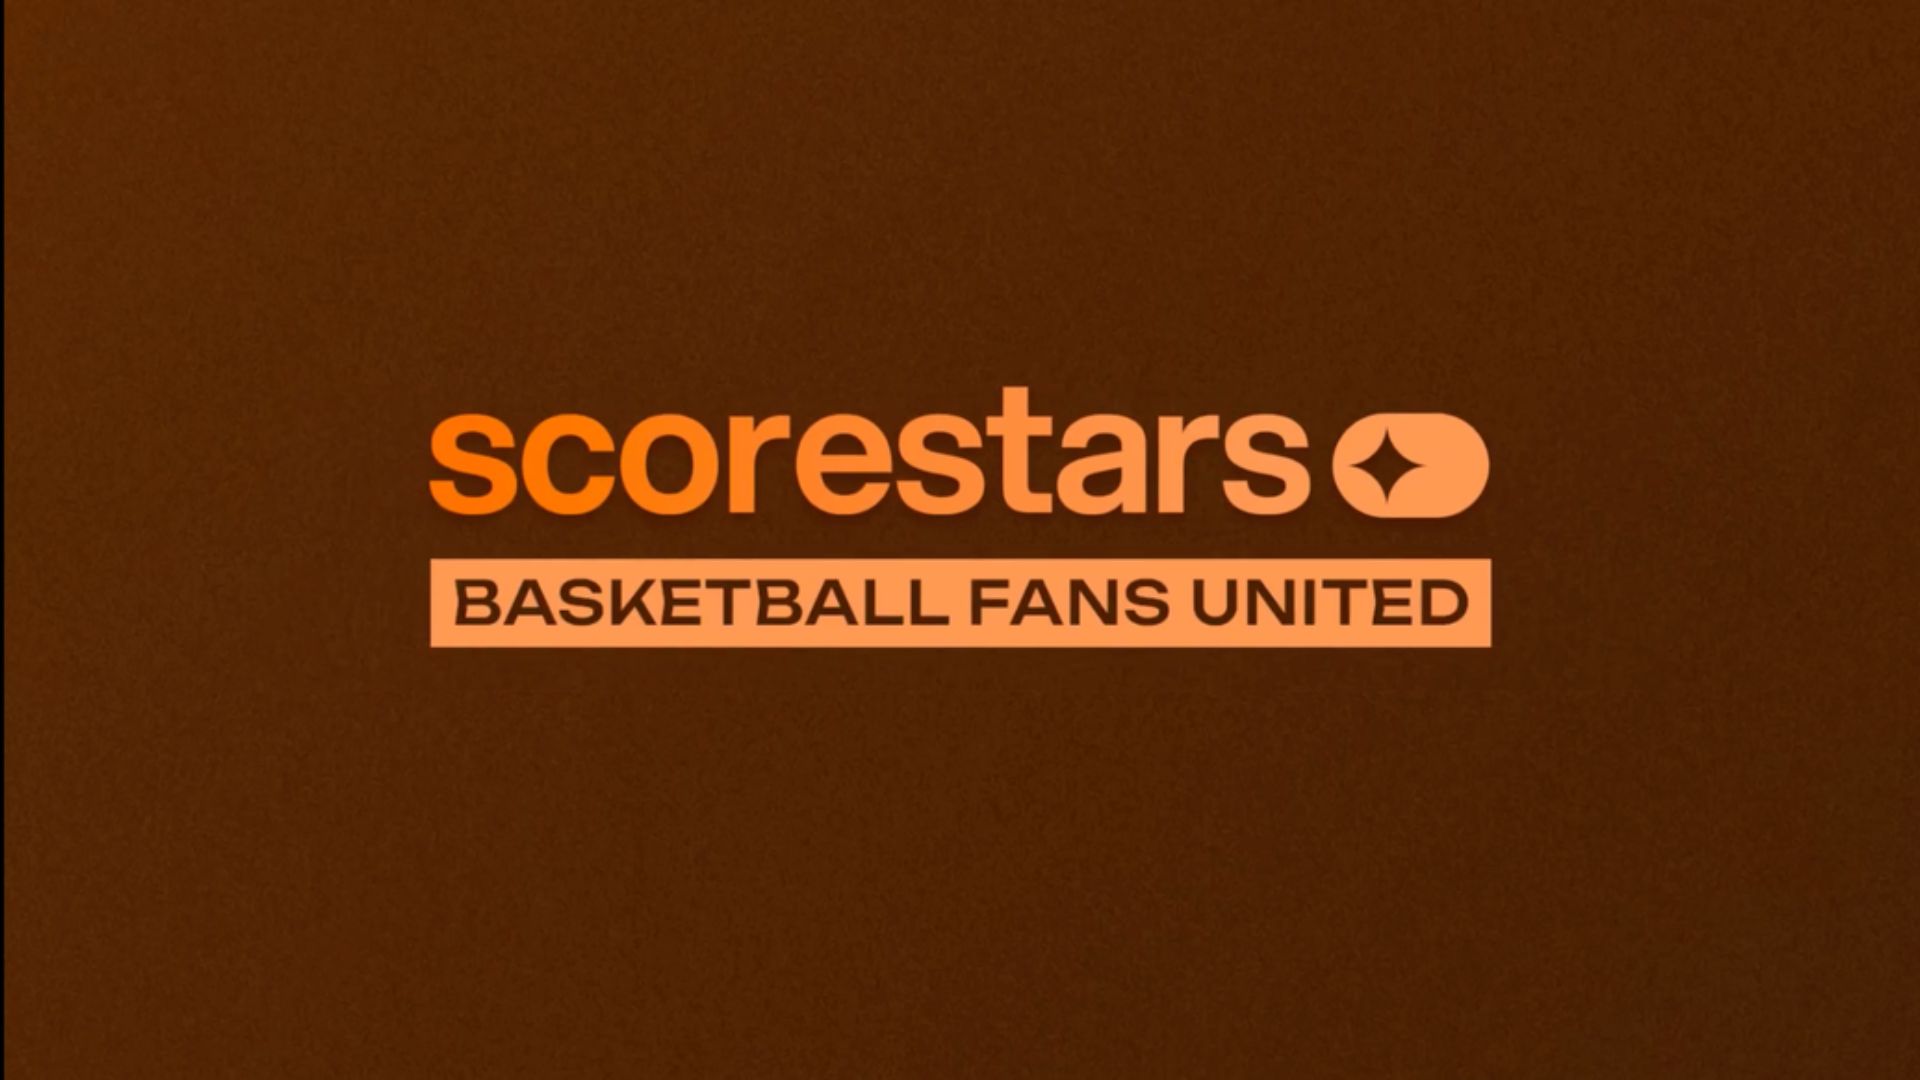 scorestars raised seed funding for basketball app